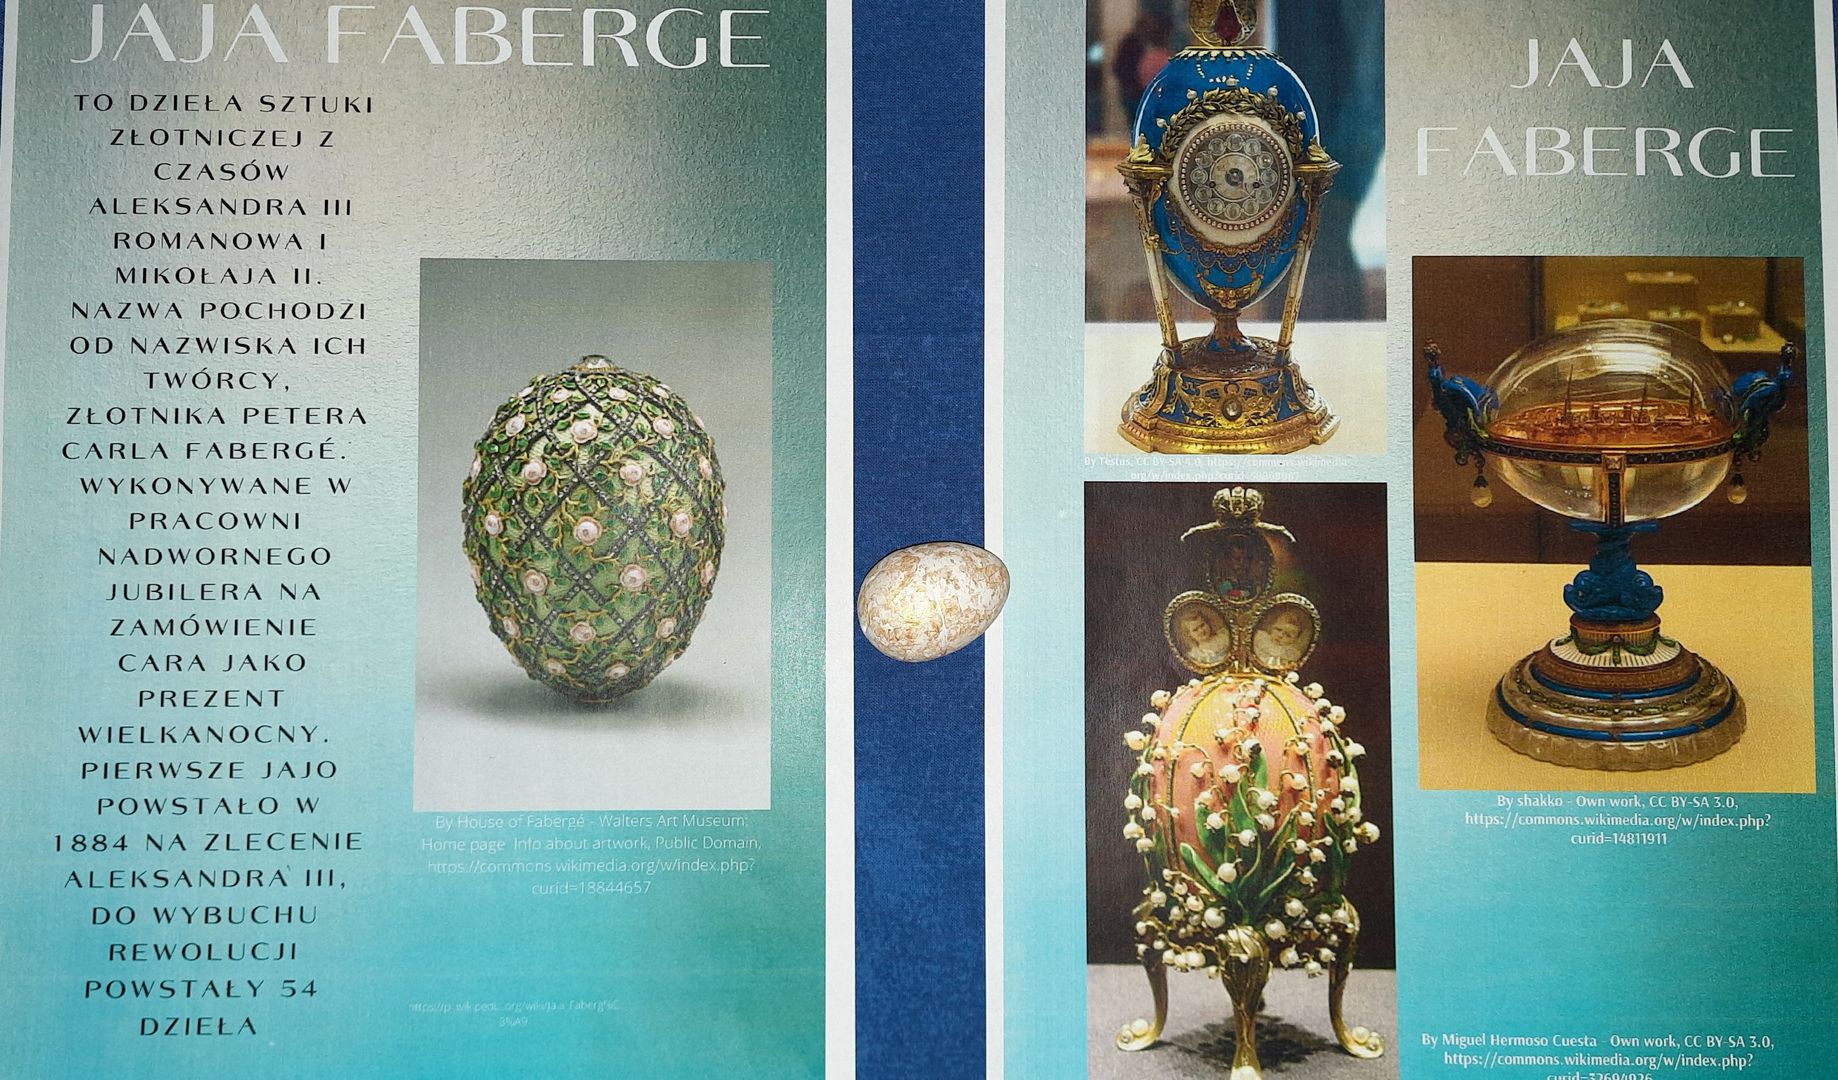 Jaja Faberge to dzieła sztuki złotniczej, nazwa pochodzi od nazwiska ich twórcy